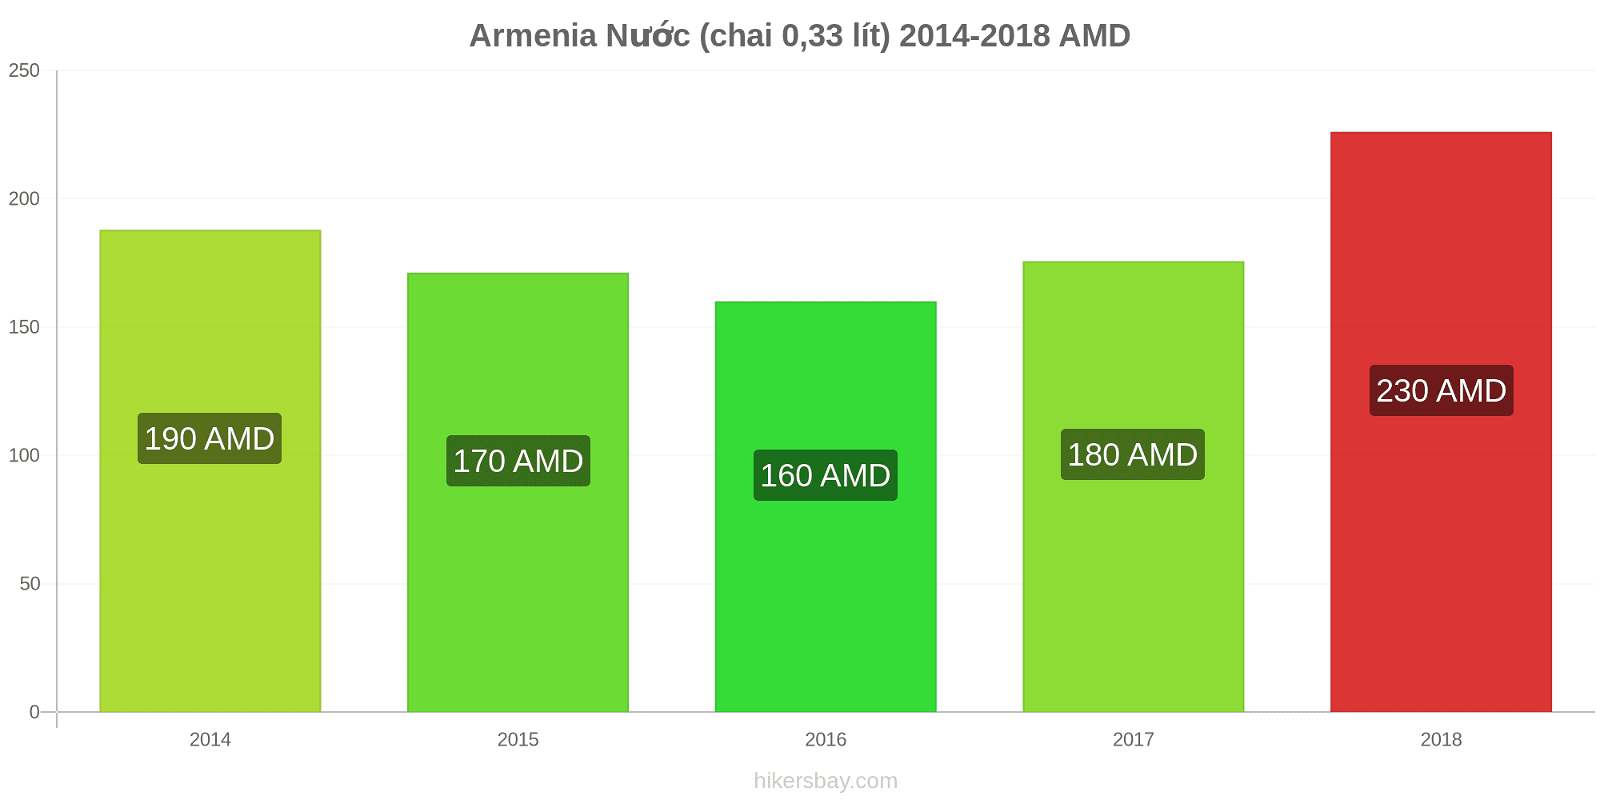 Armenia thay đổi giá cả Nước (chai 0.33 lít) hikersbay.com